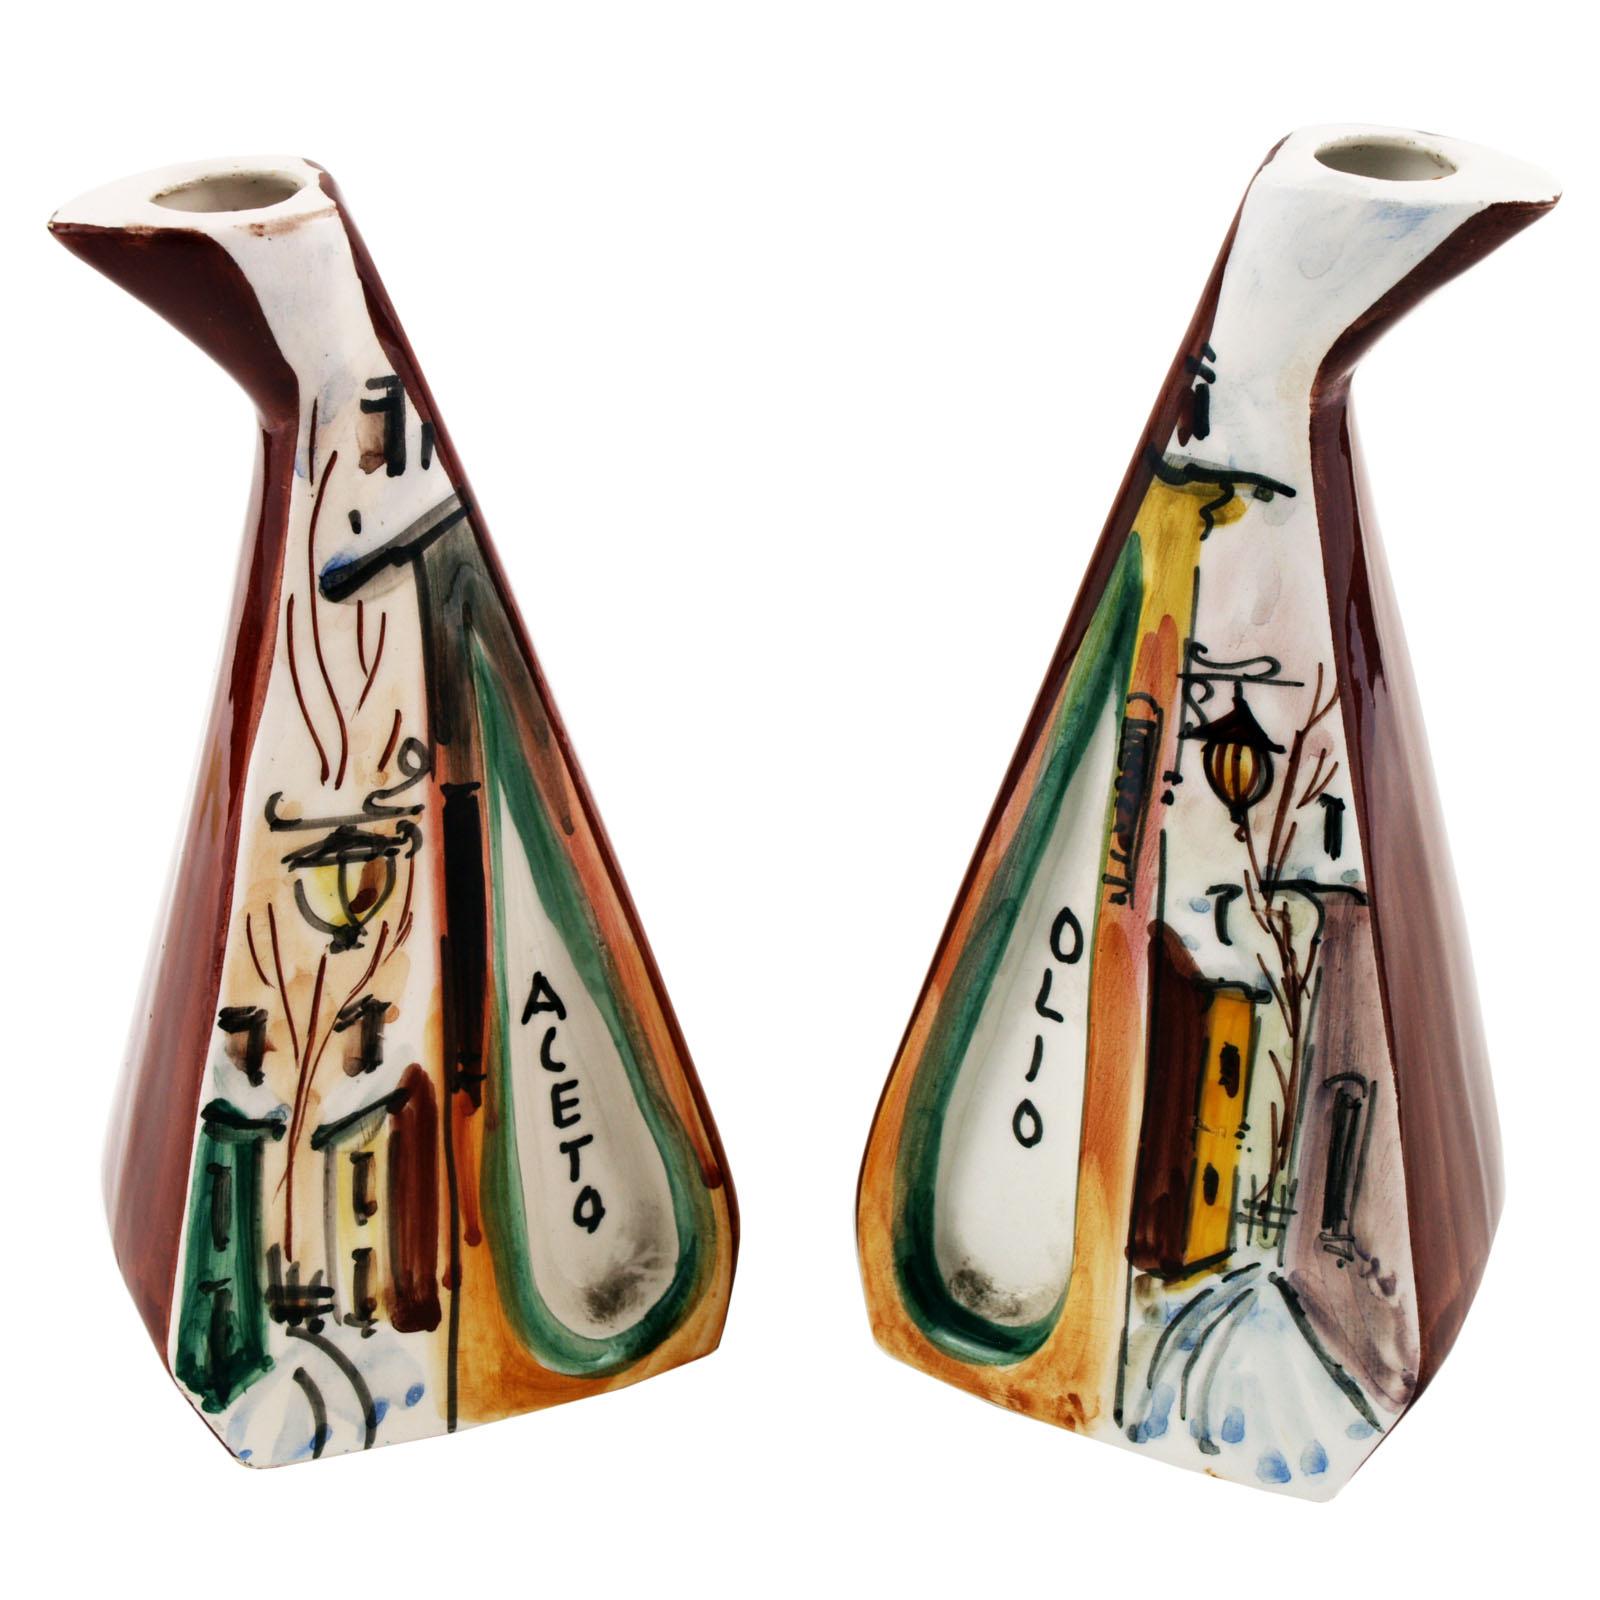 Il Pino Barletta, Behälter aus Vinegar und Öl, handdekorierte Keramik, 1950er Jahre